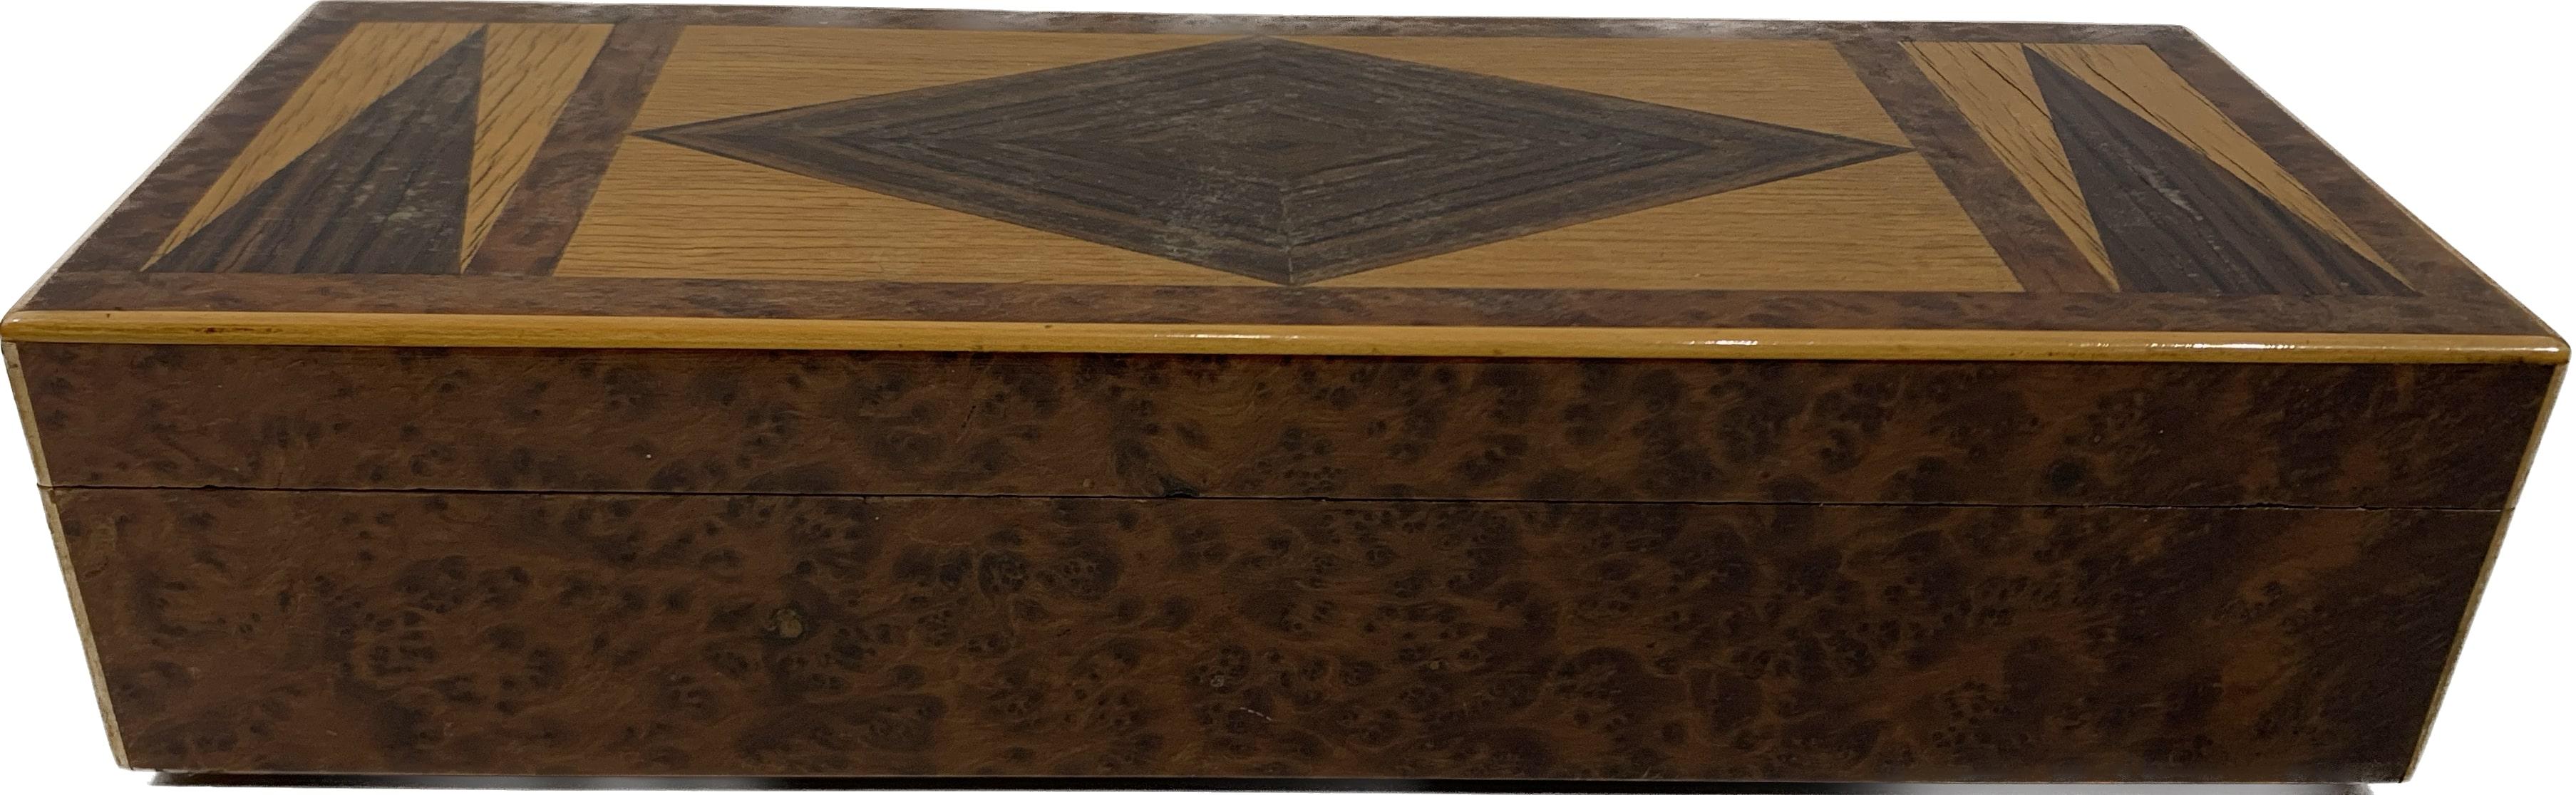 Art Déco Decorative Wooden Box For Sale 1